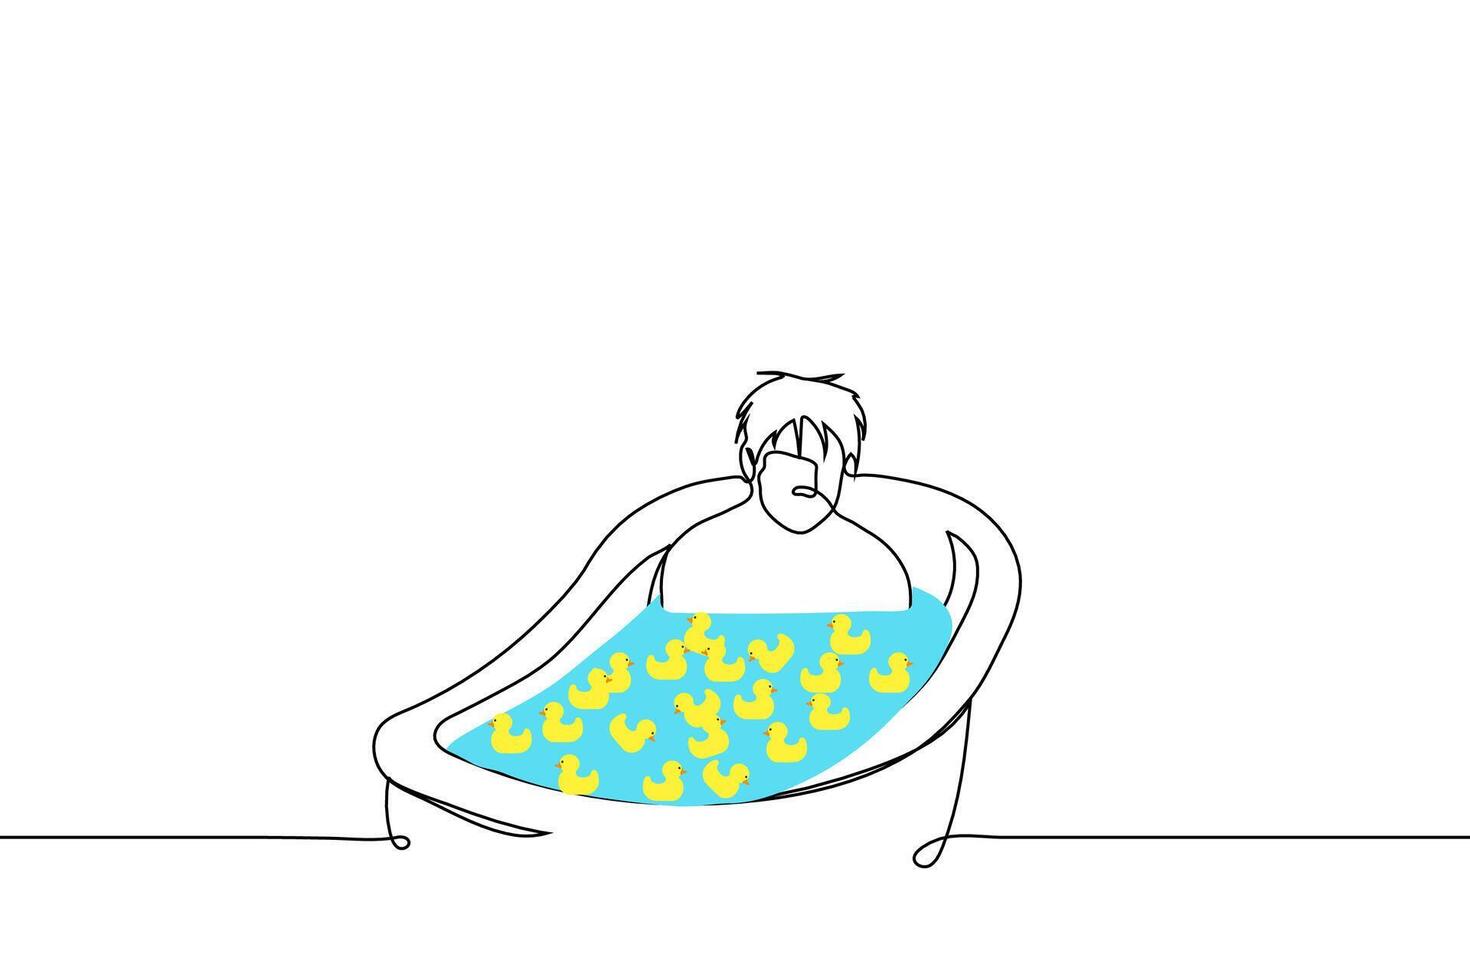 Mann ist Sitzung im voll Bad und Gelb Gummi Enten sind schwebend Dort - - einer Linie Zeichnung Vektor. Konzept traurig Erwachsene Mann nehmen ein Bad nostalgisch zum Kindheit vektor